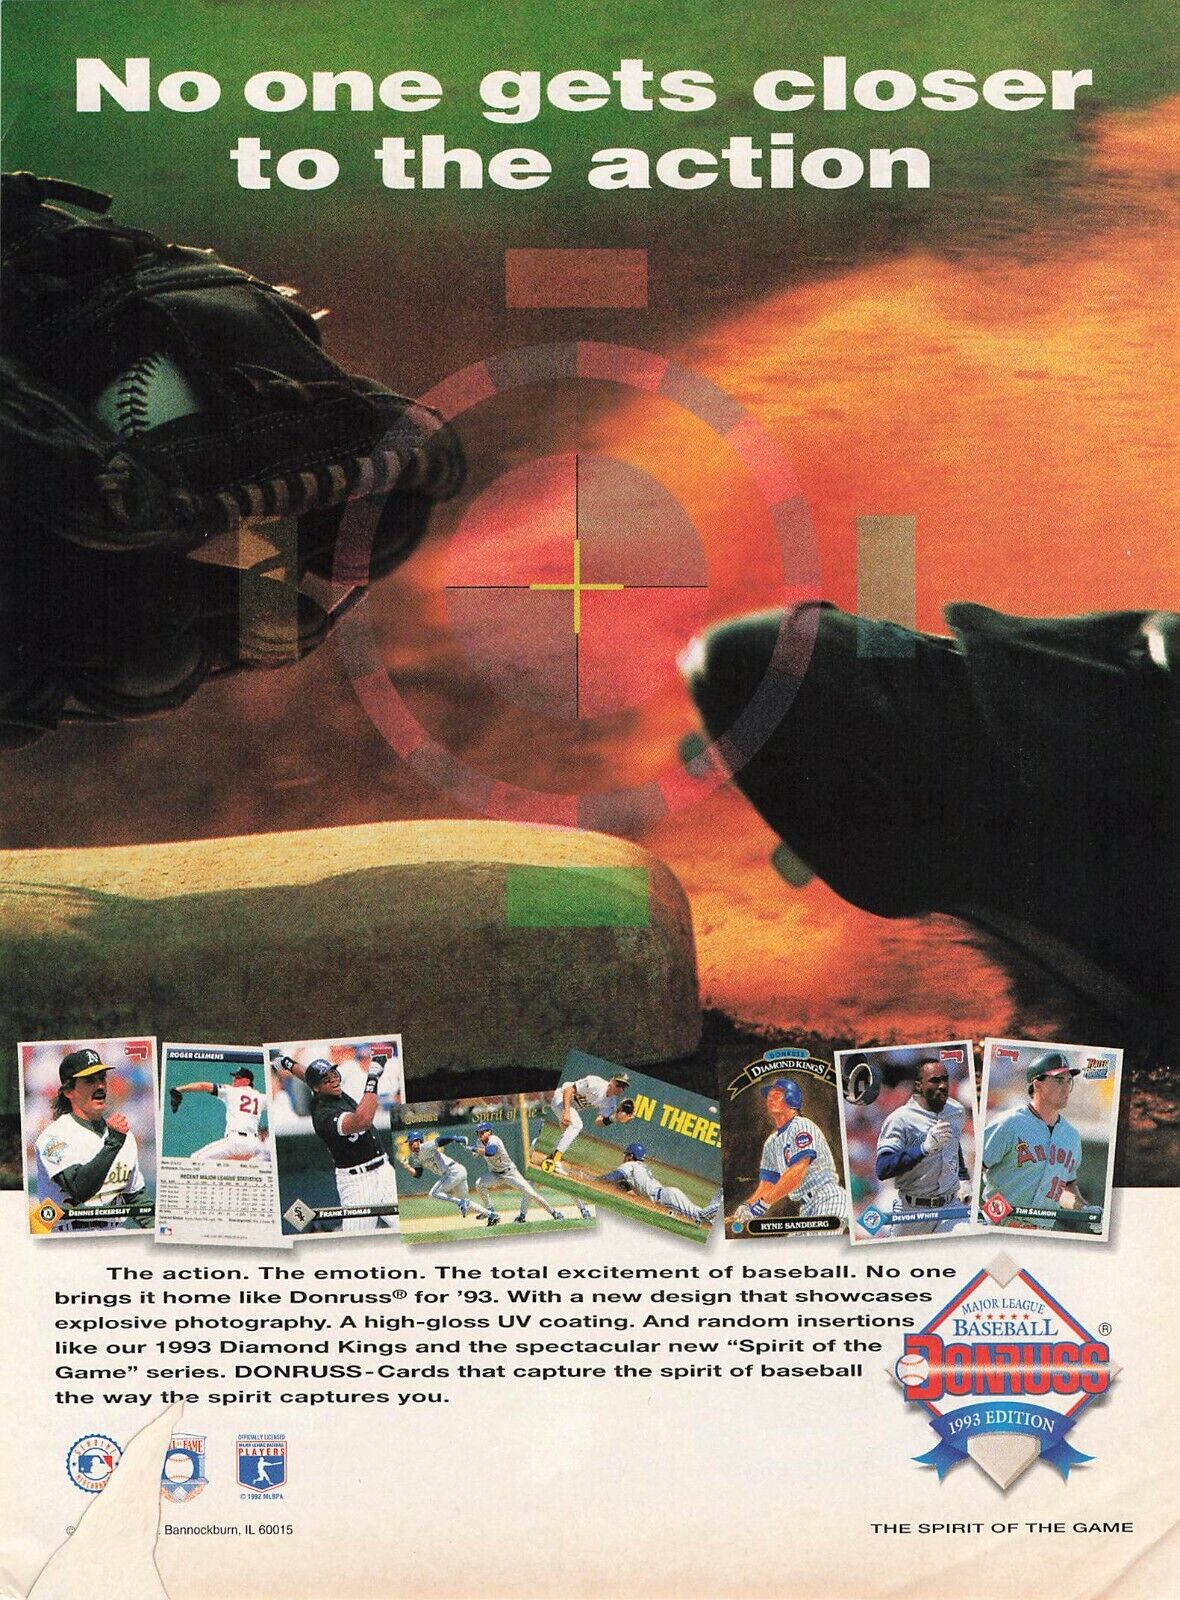 Donruss 1993 Baseball Cards Foot Baseball Glove Base Vtg Full Page Print Ad 8X11